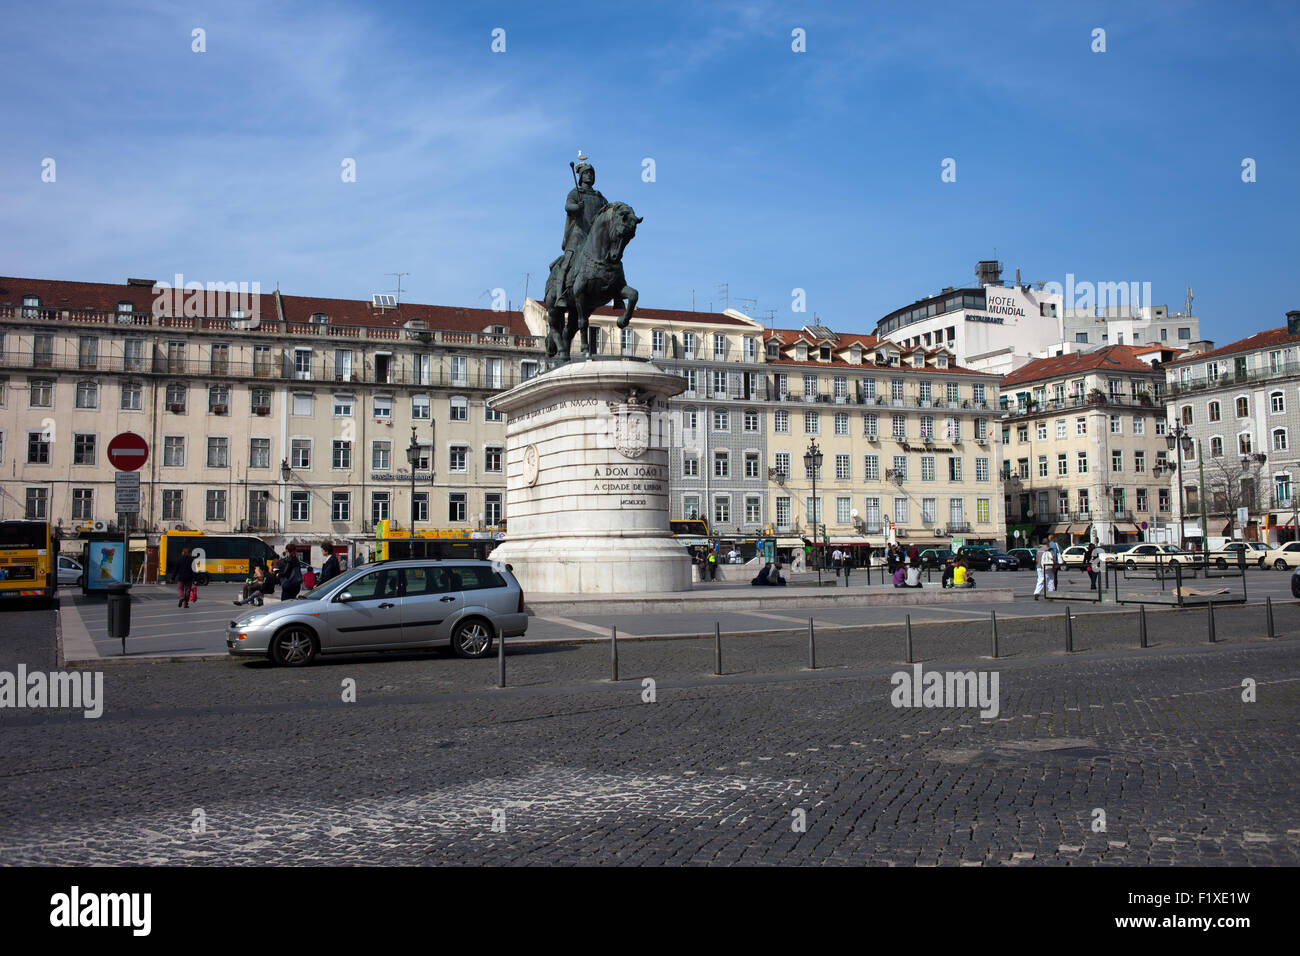 Praca da Figueira Platz in Lissabon, Portugal mit Reiterstandbild von König John I. Stockfoto